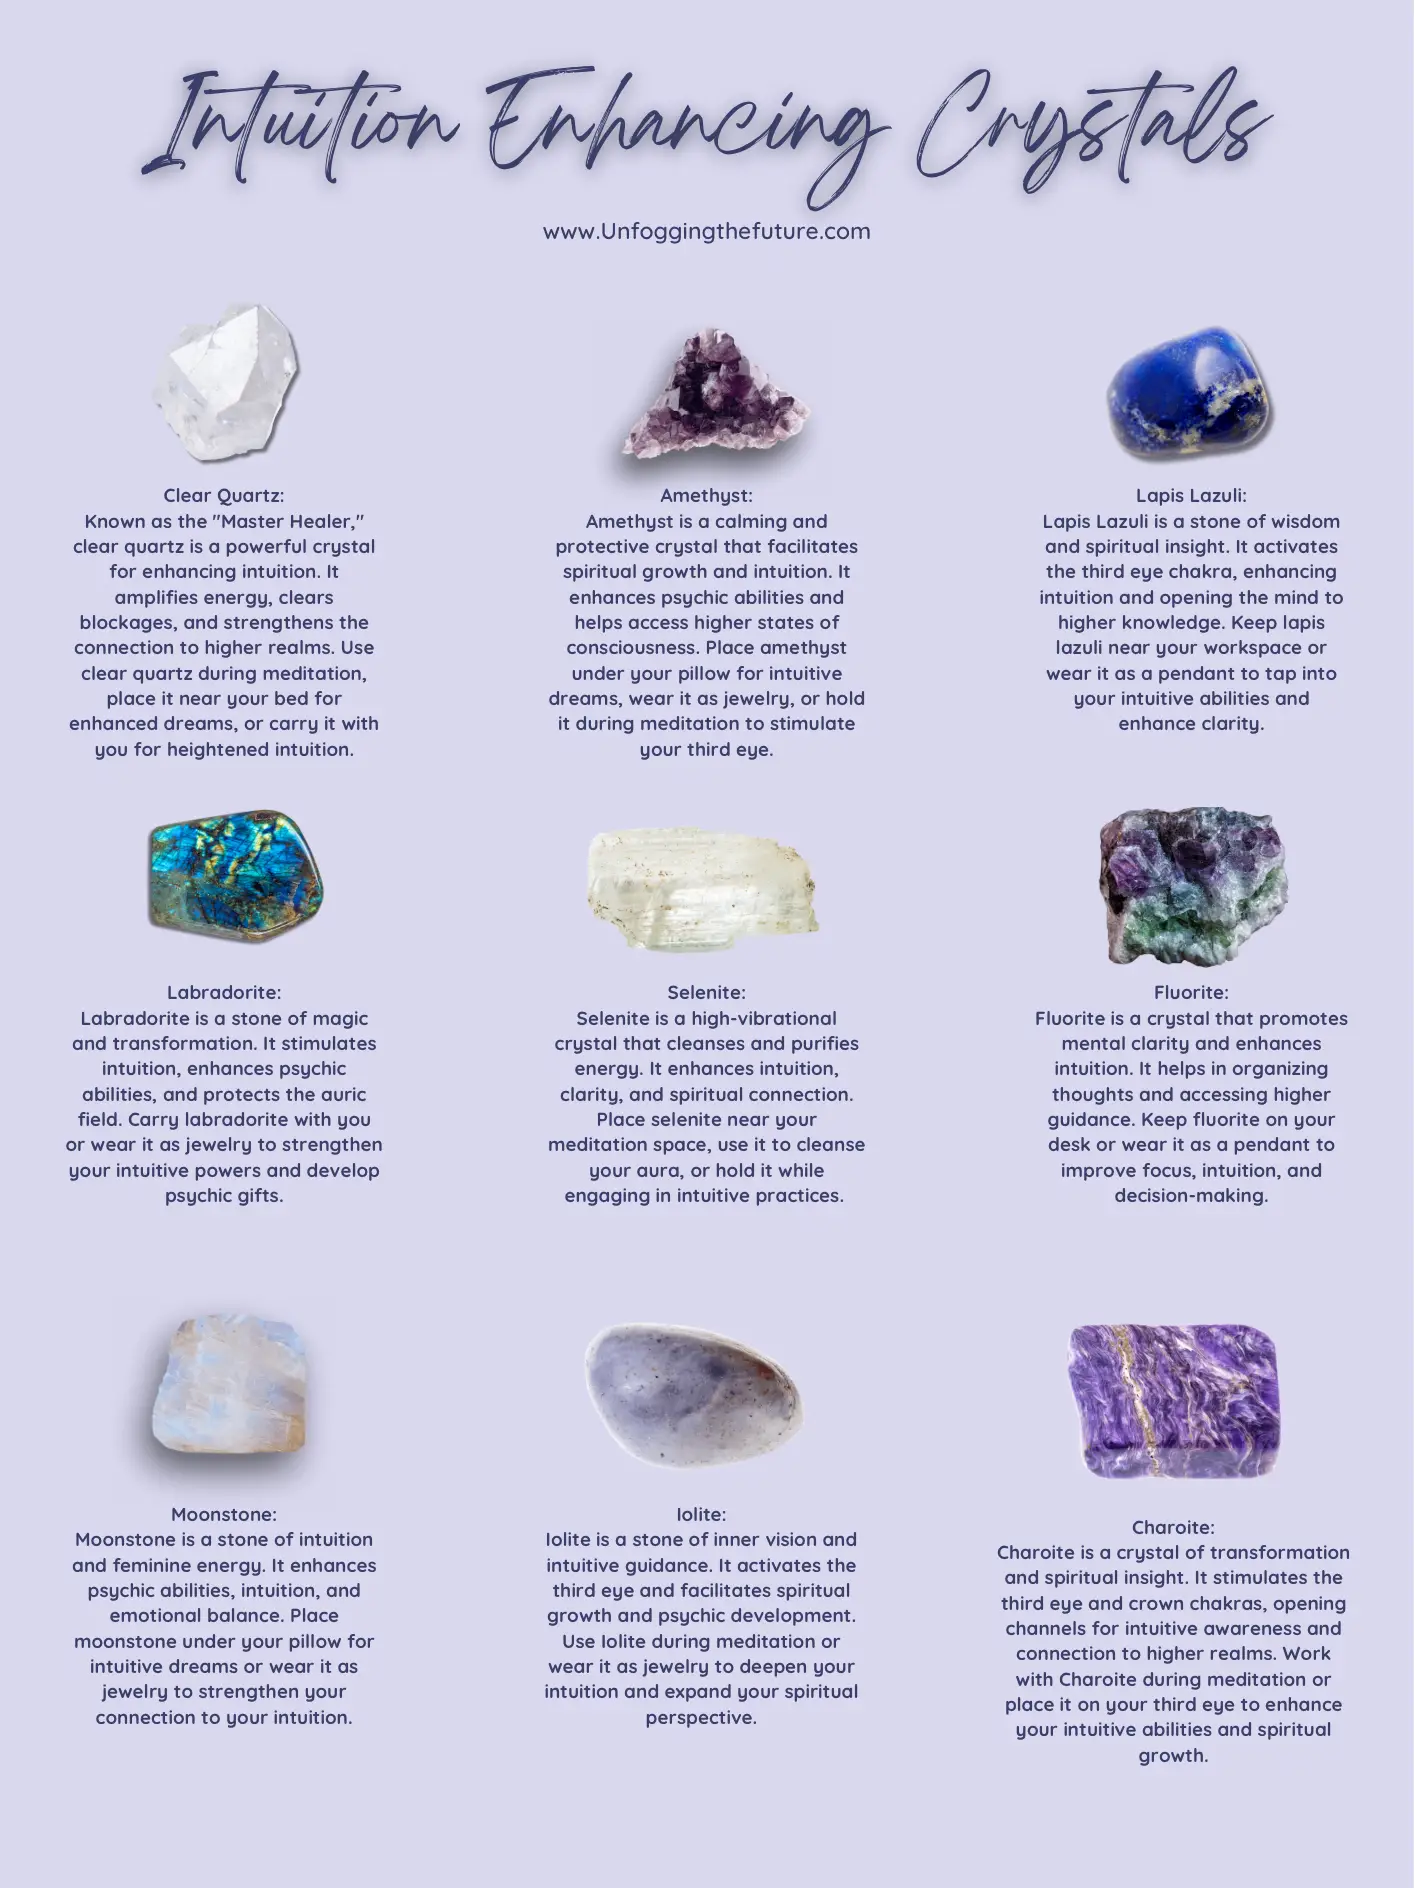 Kira Kira Crystal Crown  Crystal crown, Swarovski crystals, Luxury hair  accessories